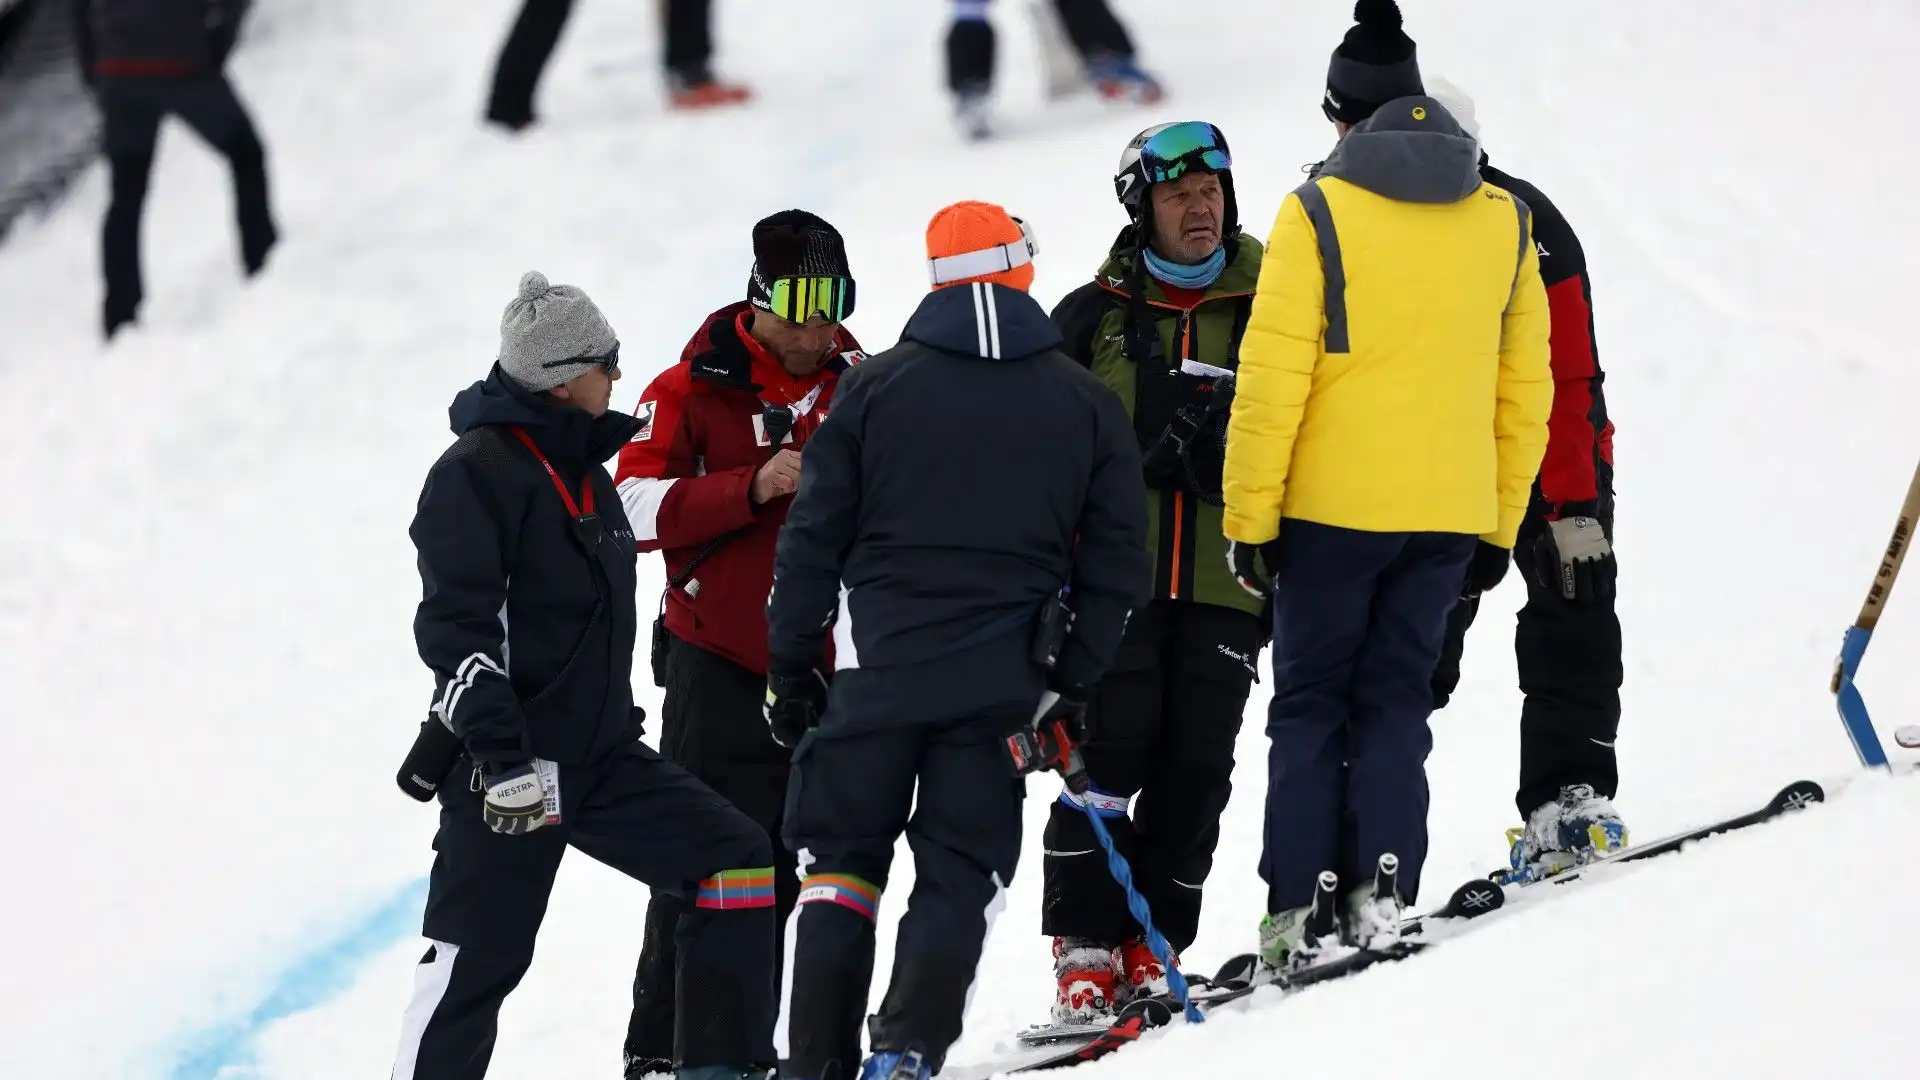 La gara era valida per la Coppa del Mondo 2022-2023 di sci alpino